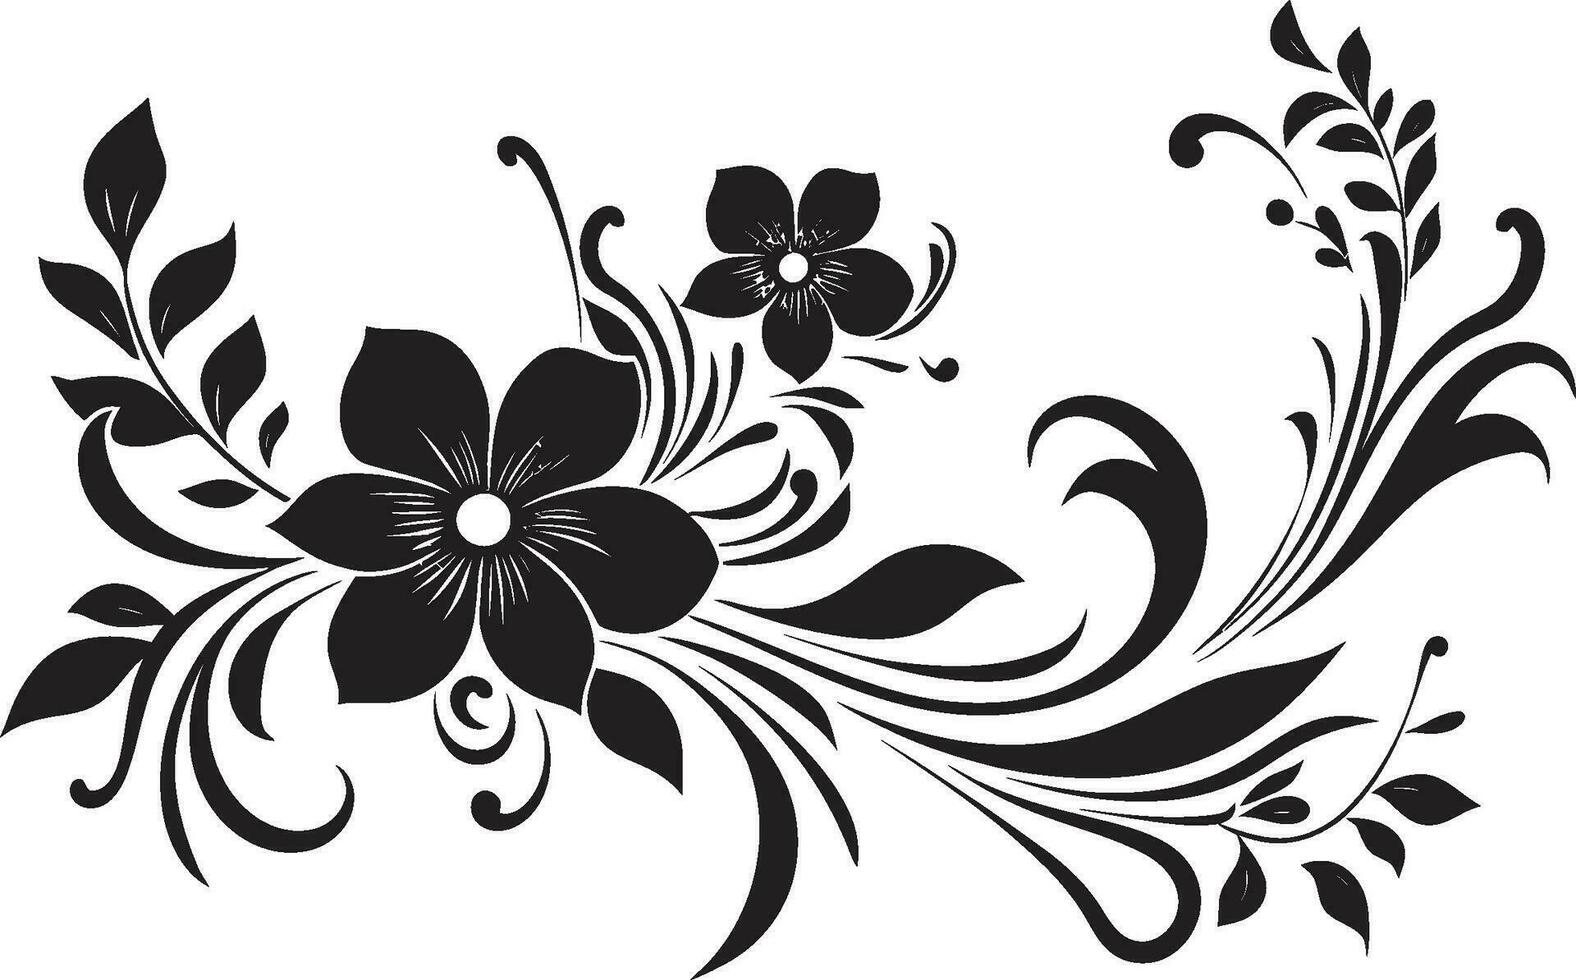 floral noir enigma intrincado negro logo vectores pétalo ensueño noir artístico floral emblema bocetos